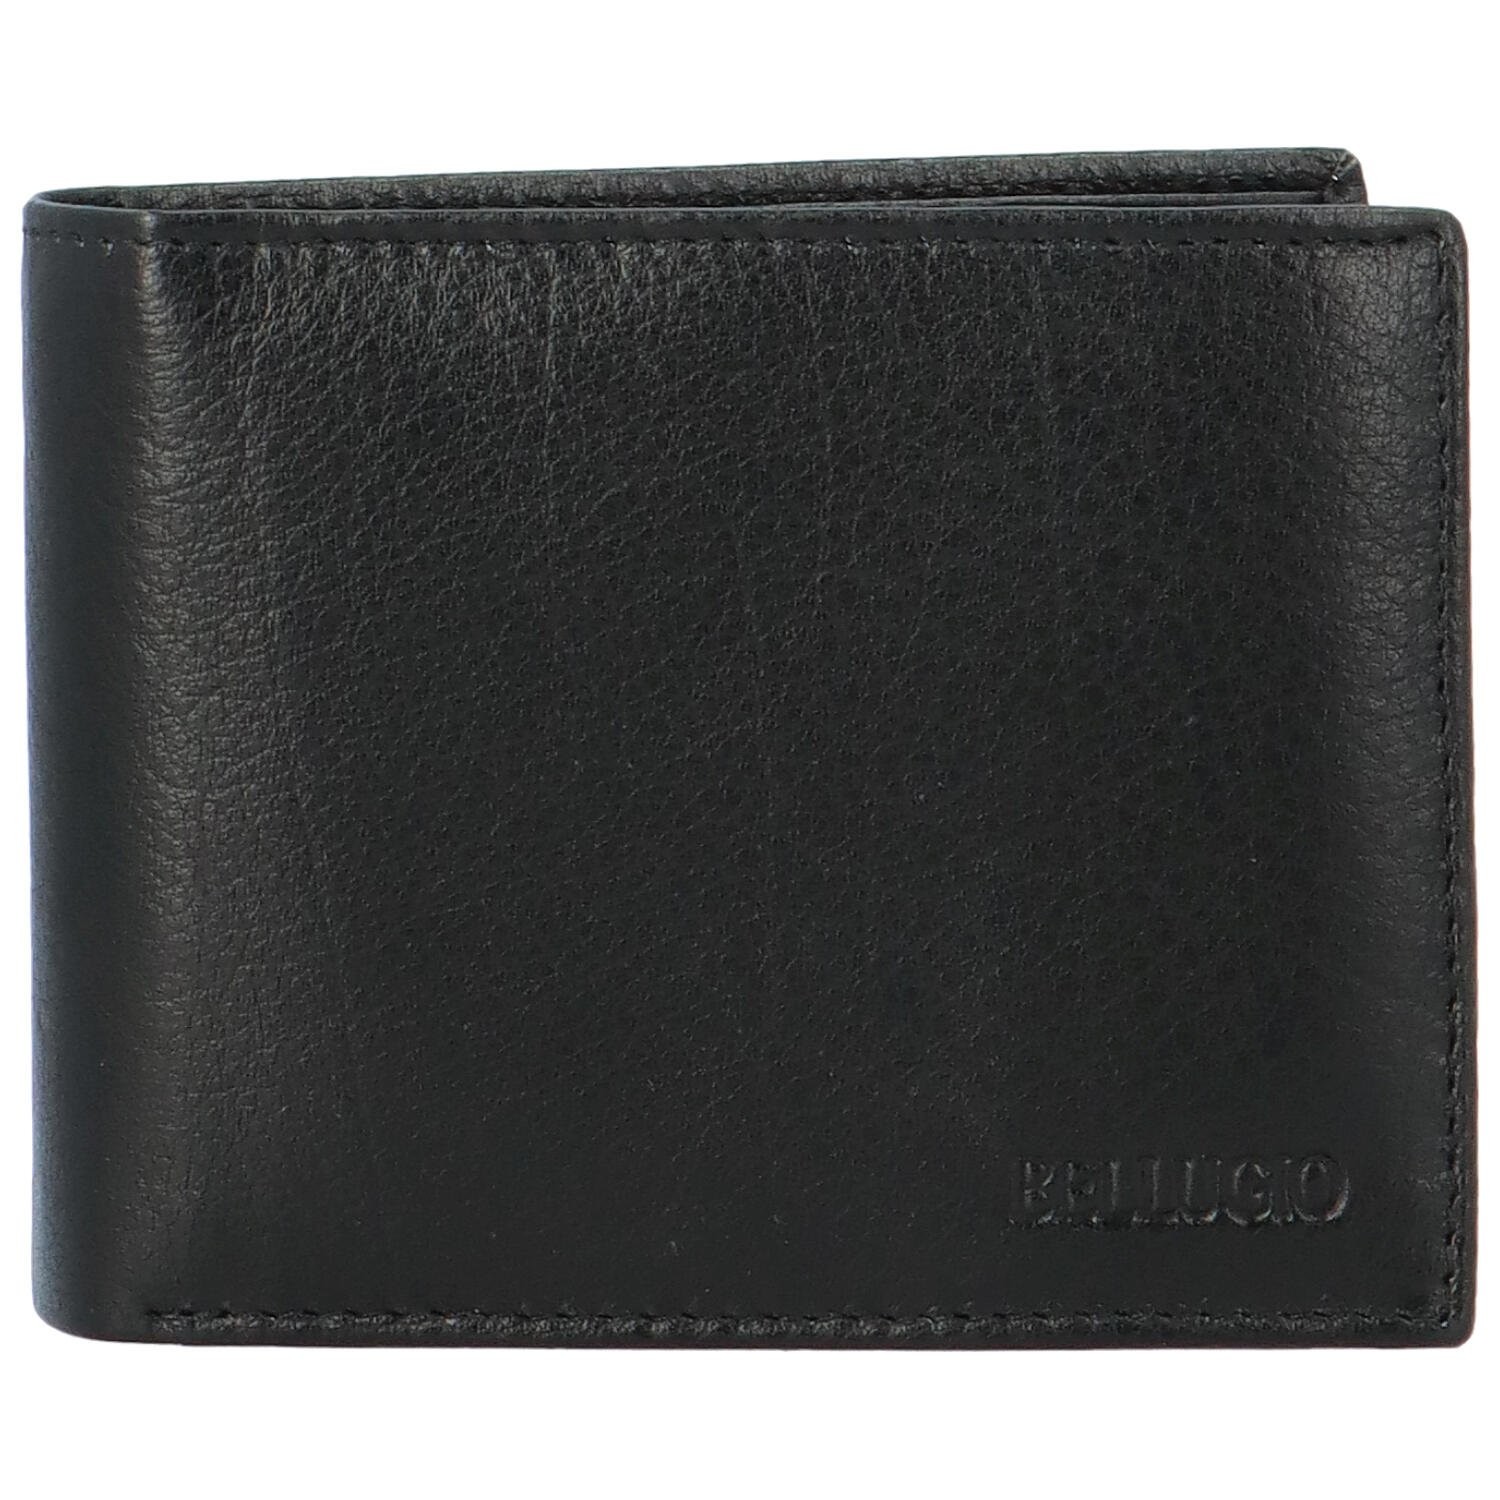 Pánská kožená peněženka černá - Bellugio Murmian černá